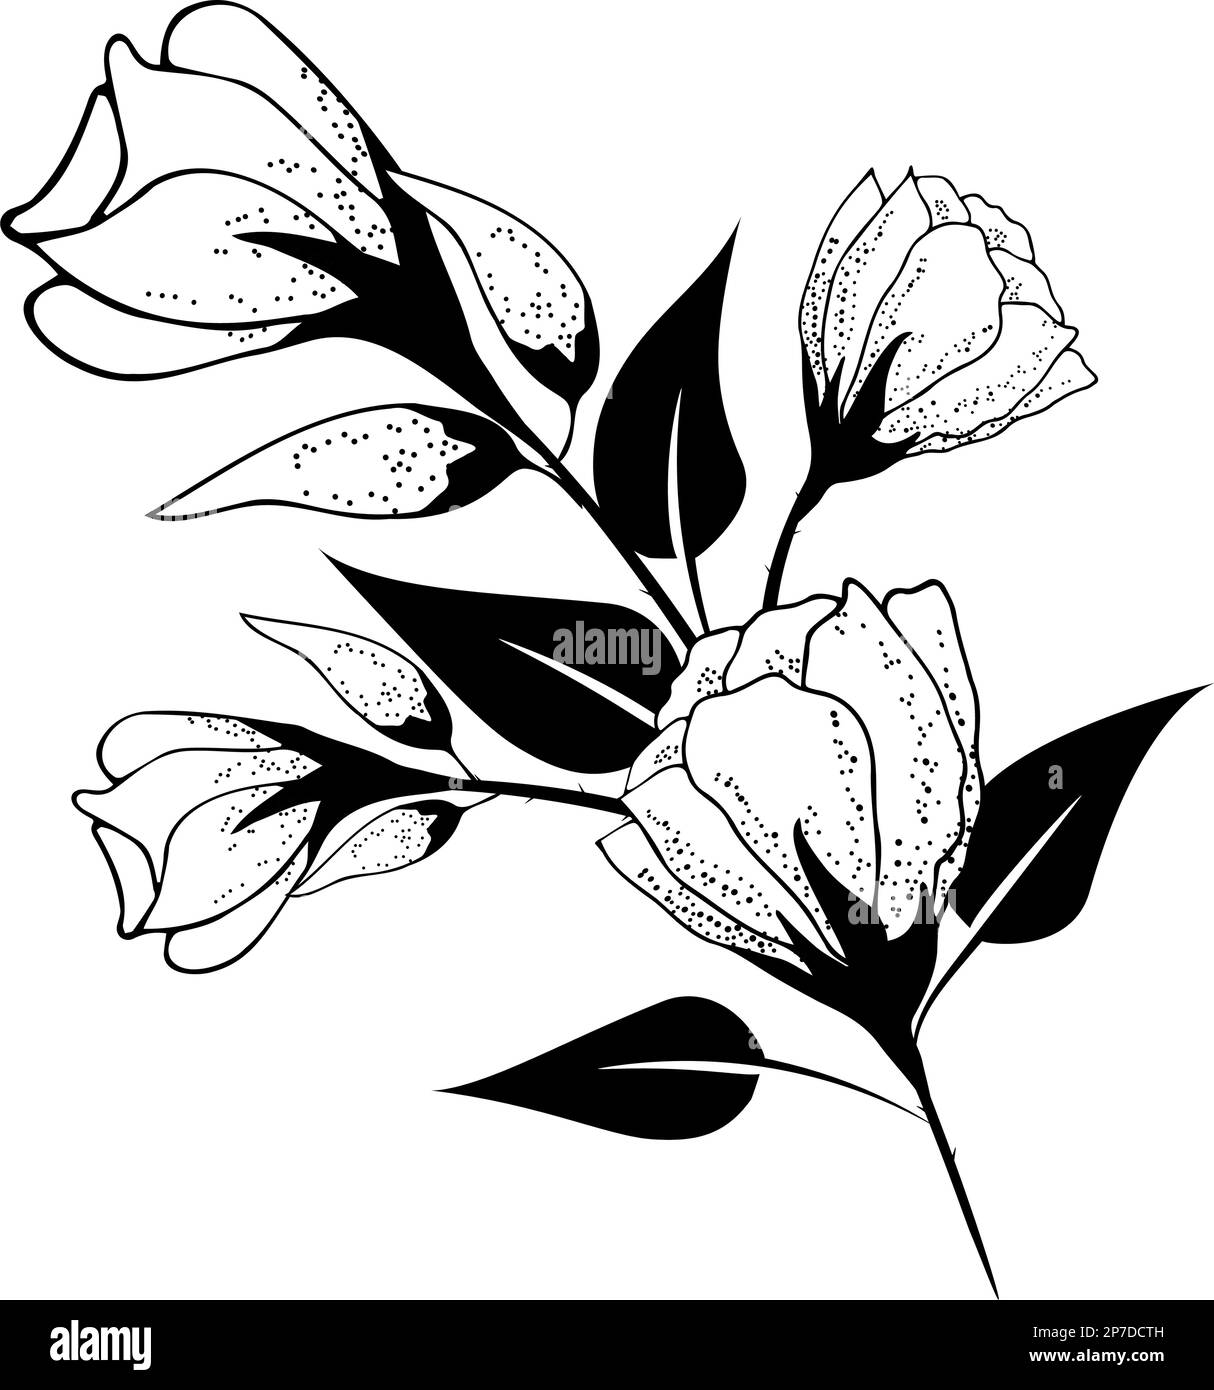 Blumiger Hintergrund, blumige Zusammensetzung, blumiger Hintergrund mit zarten Blüten und Knospenzweigen. Von Hand zeichnen. Stilvolle Einrichtung, Einladungen Stock Vektor